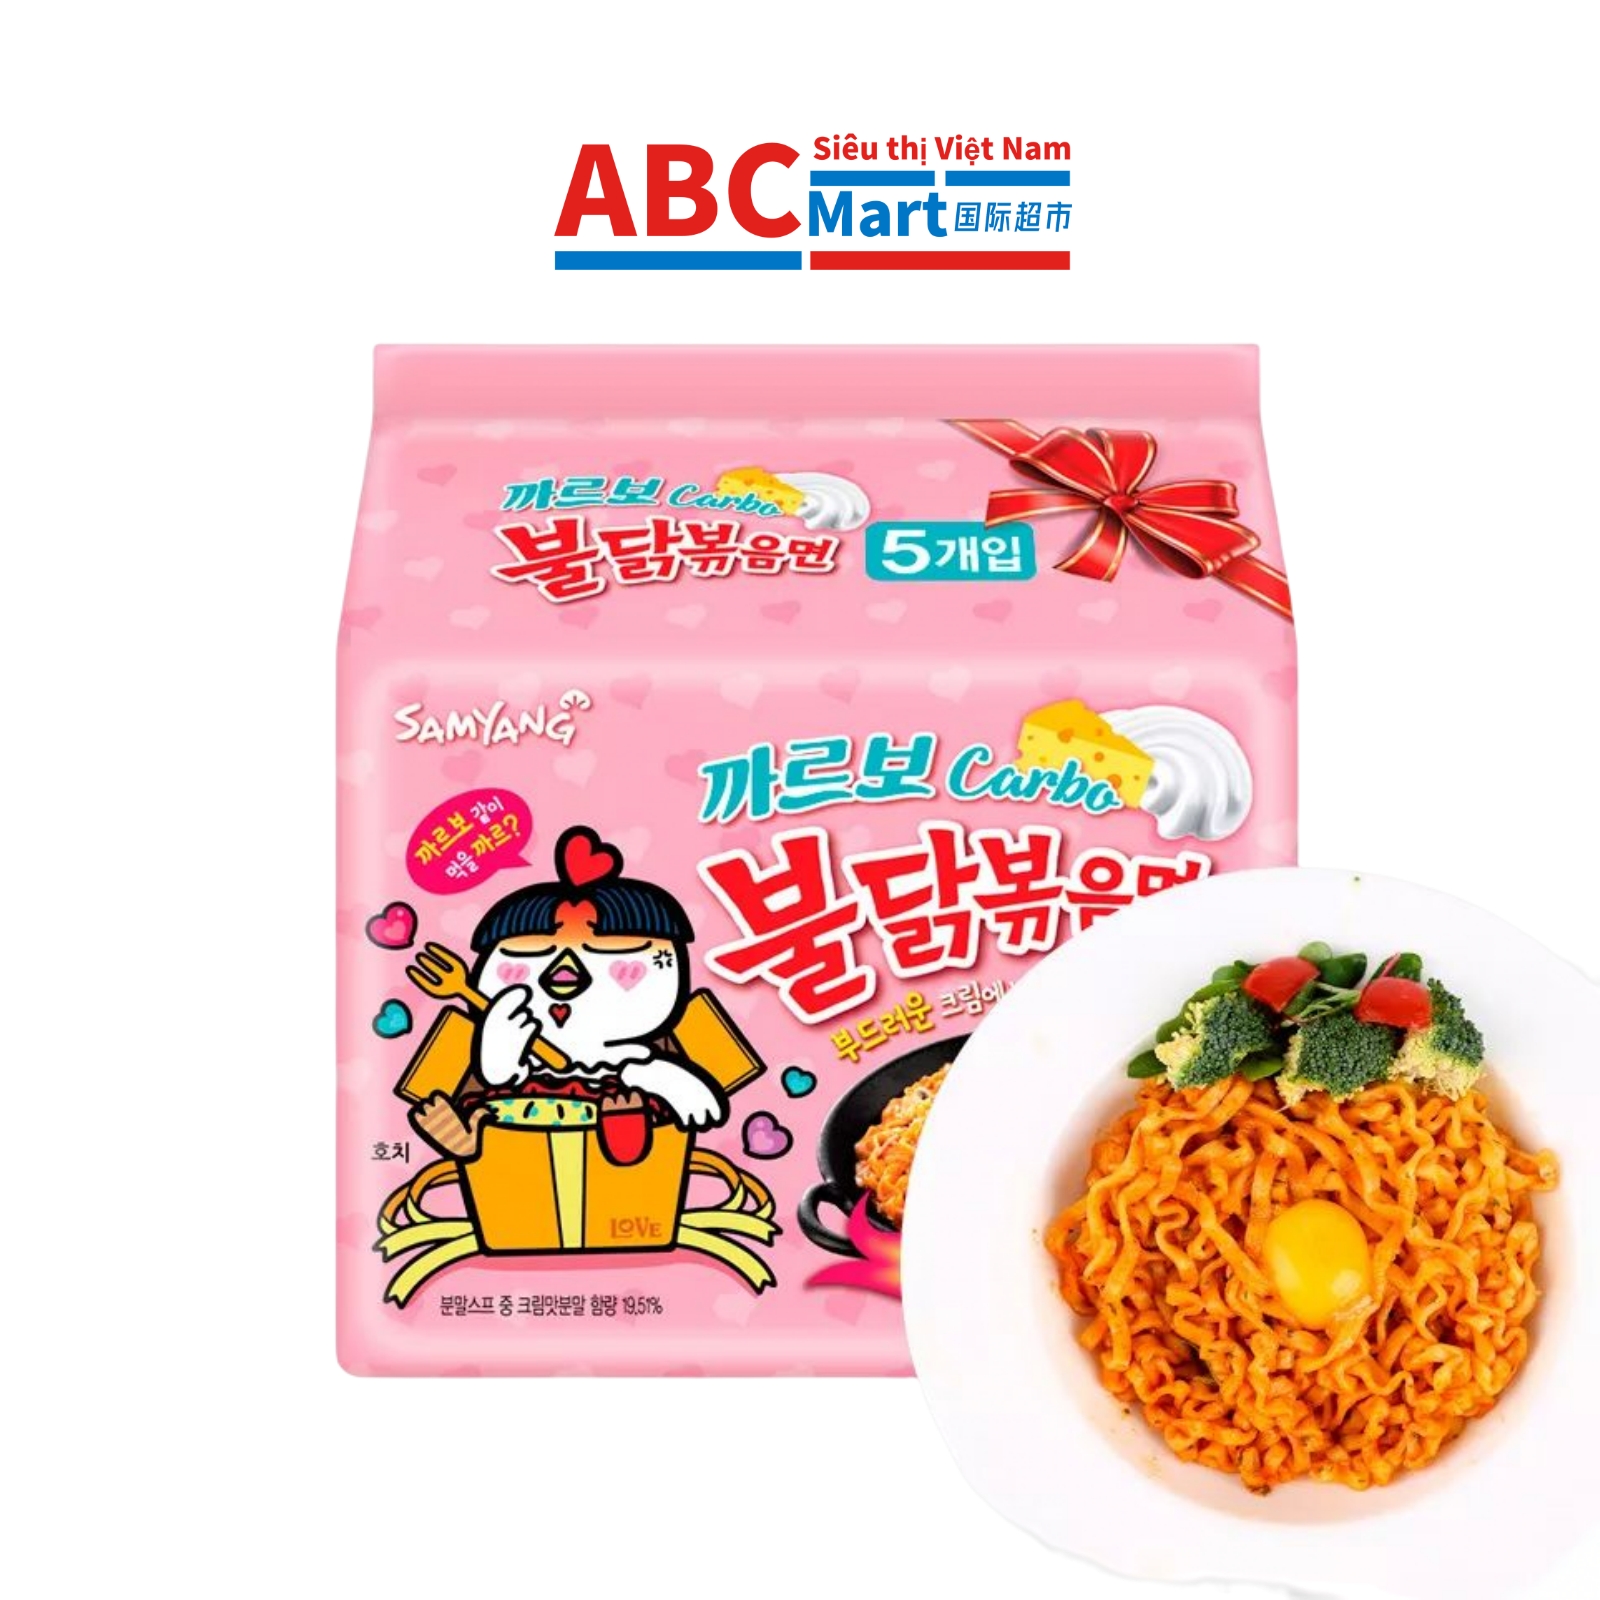 【韩国-Samyang三养火鸡面奶油味130g】速食拉面拌面-ABCMart 国际超市